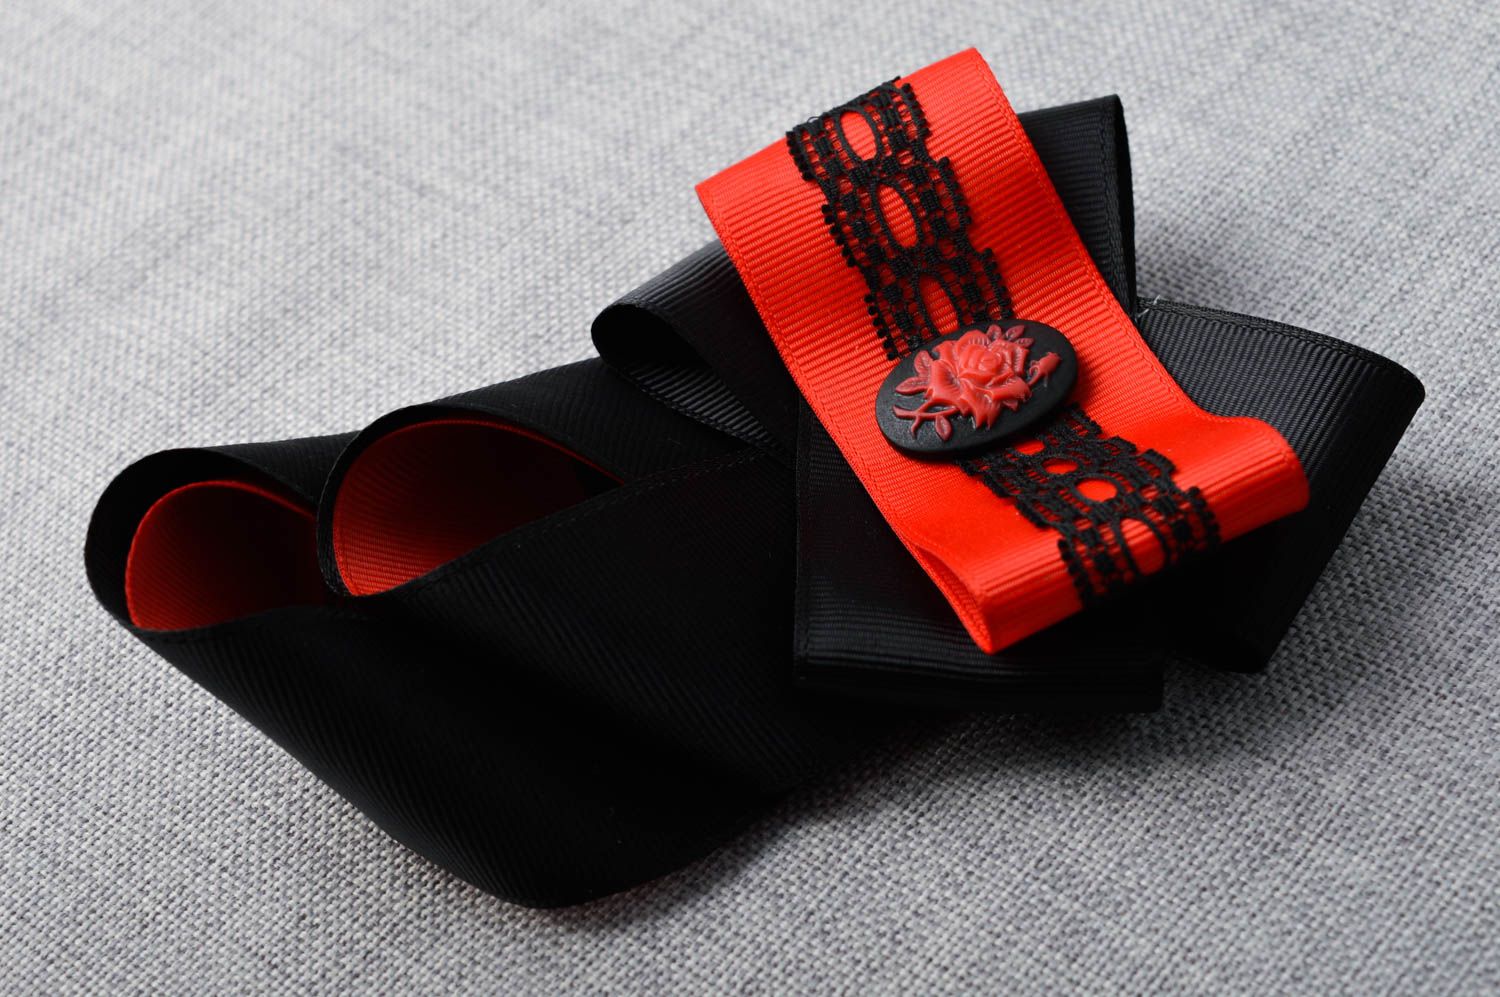 Cravate enfant fait main Accessoire design rouge et noir Vêtement enfant photo 1